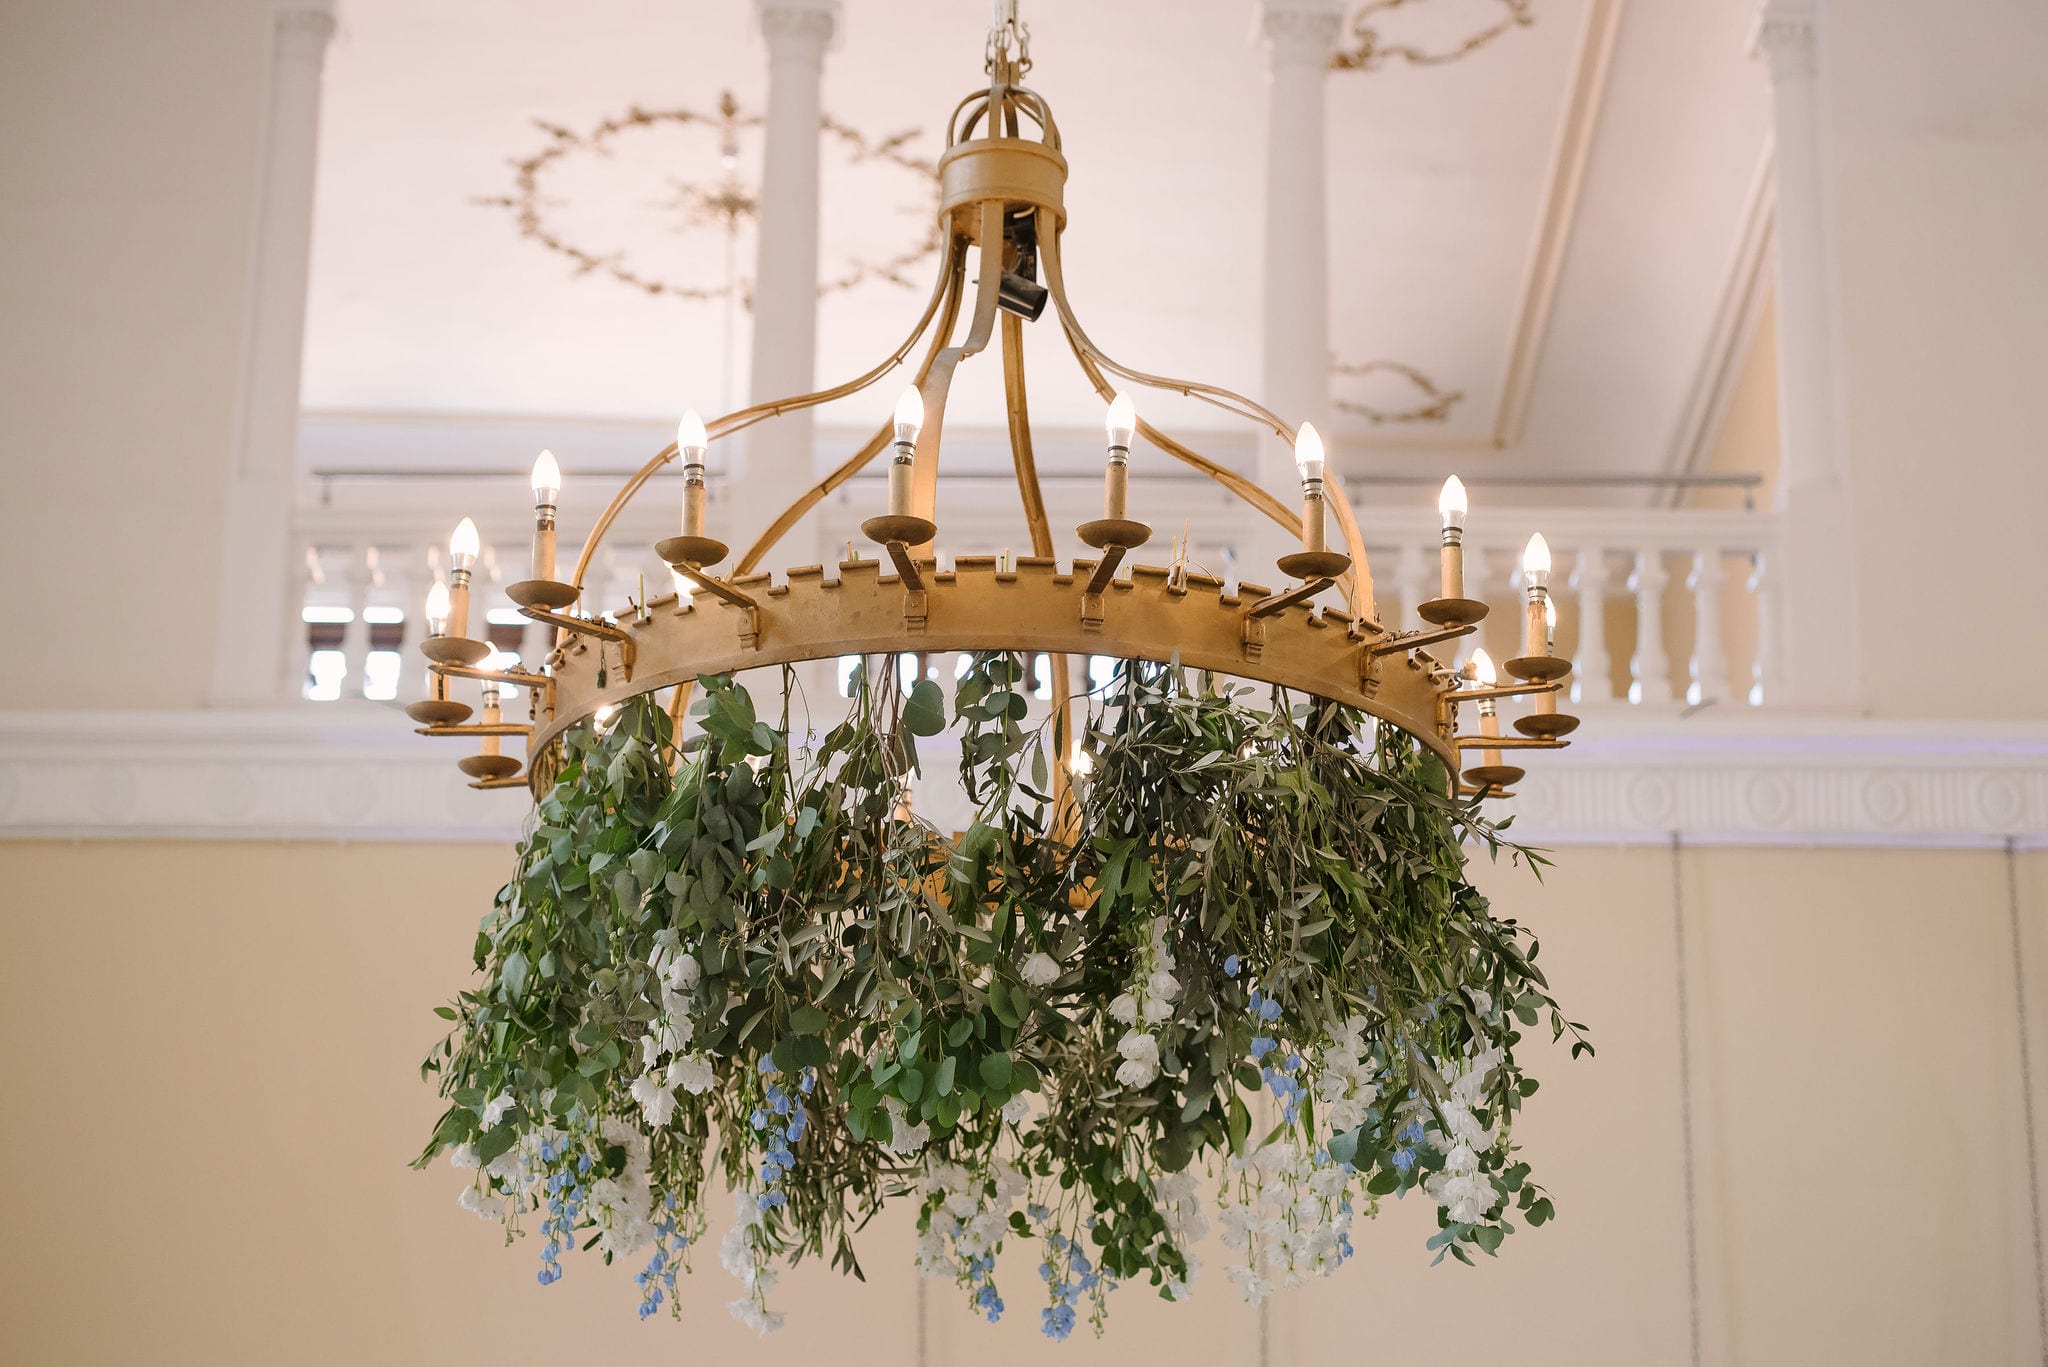 Floral chandelier at a wedding venue in Surrey